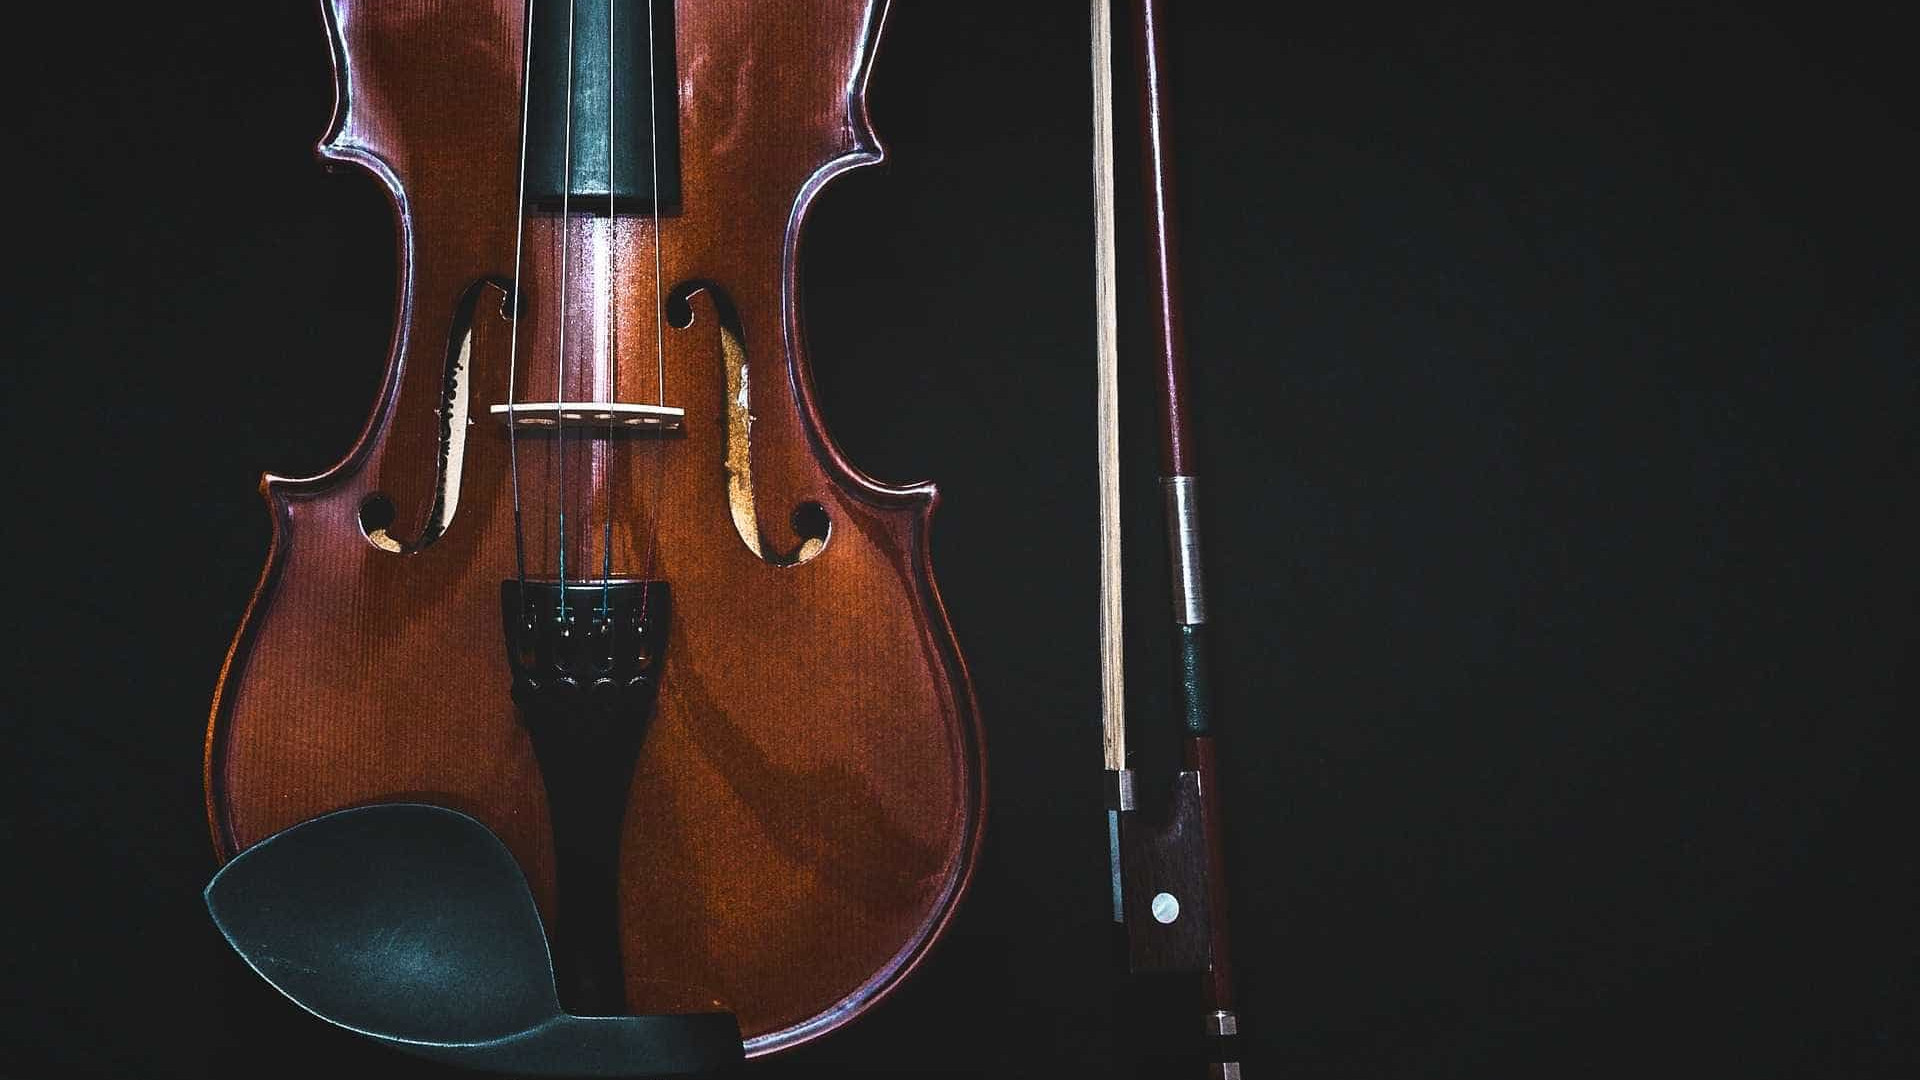 Violino italiano de 1,4 milhão de euros é furtado em Genebra